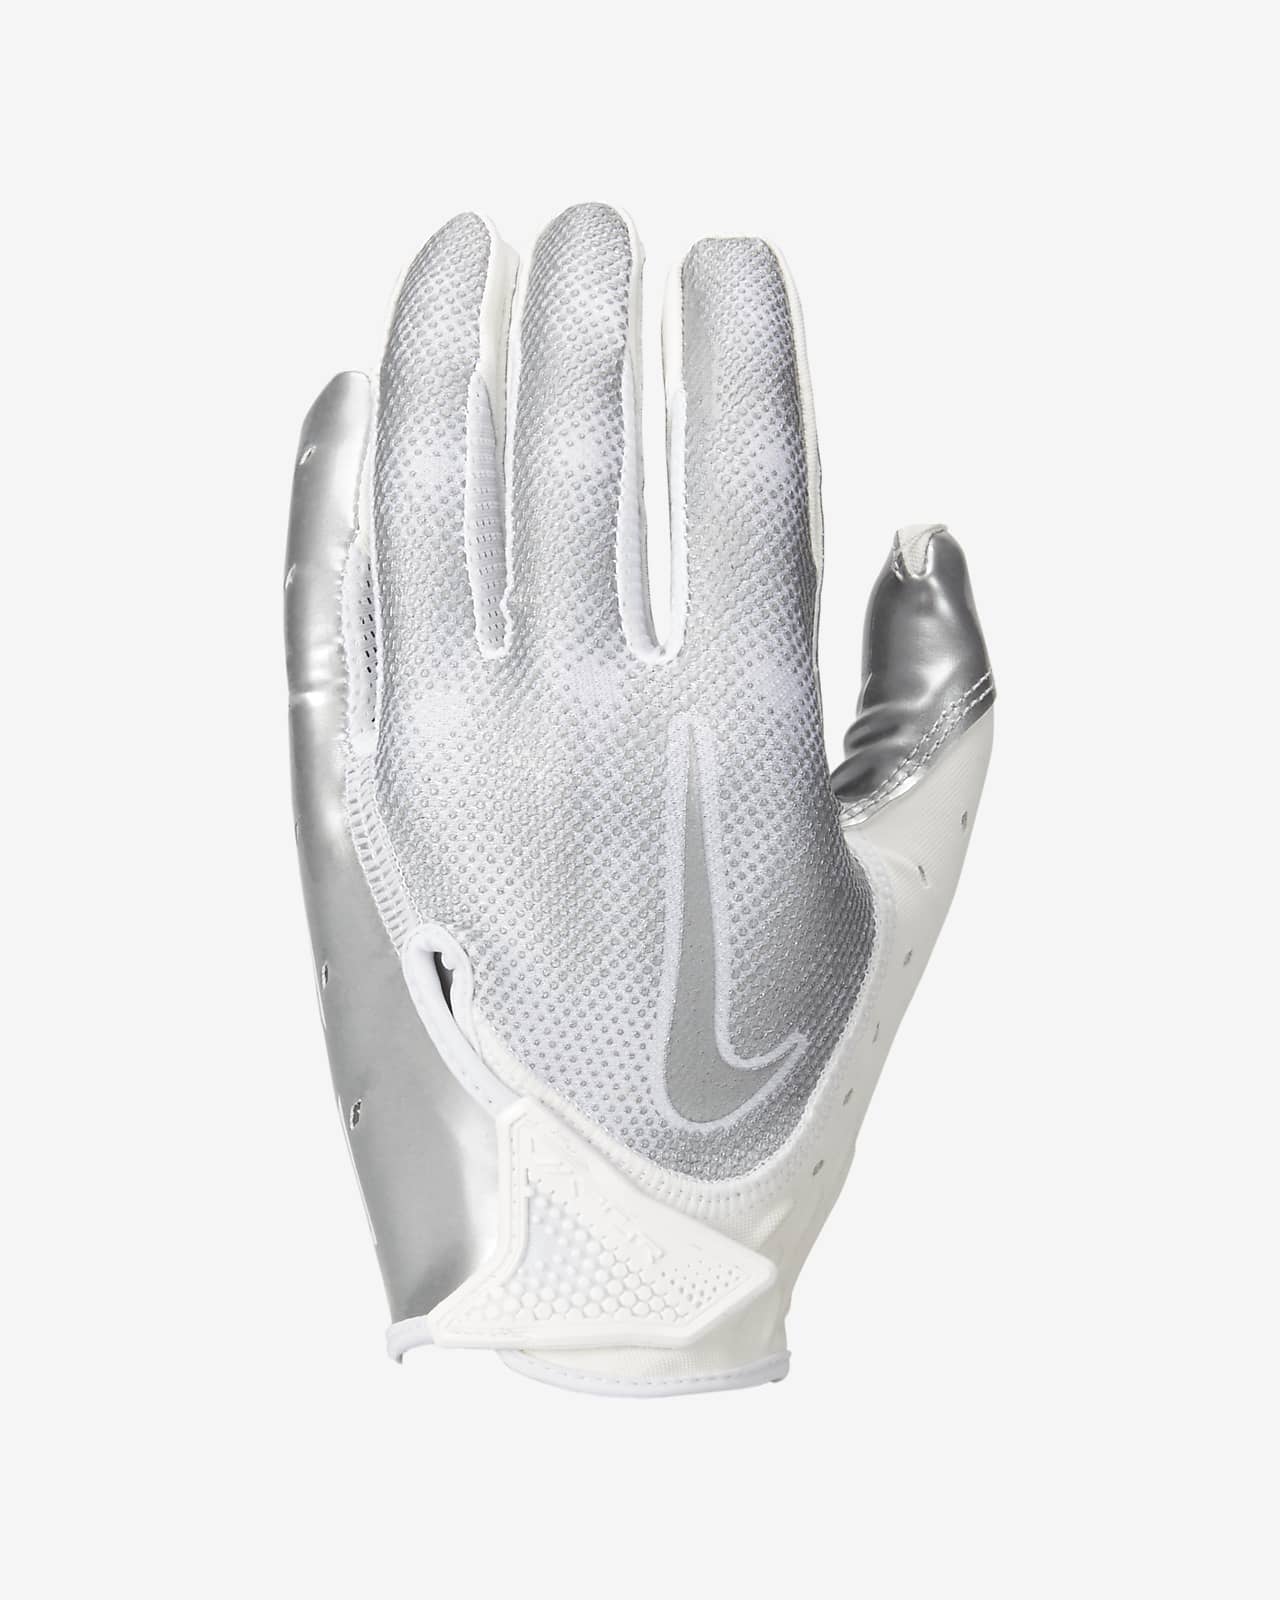  Nike Youth Vapor Jet 7.0 Football Gloves White, White